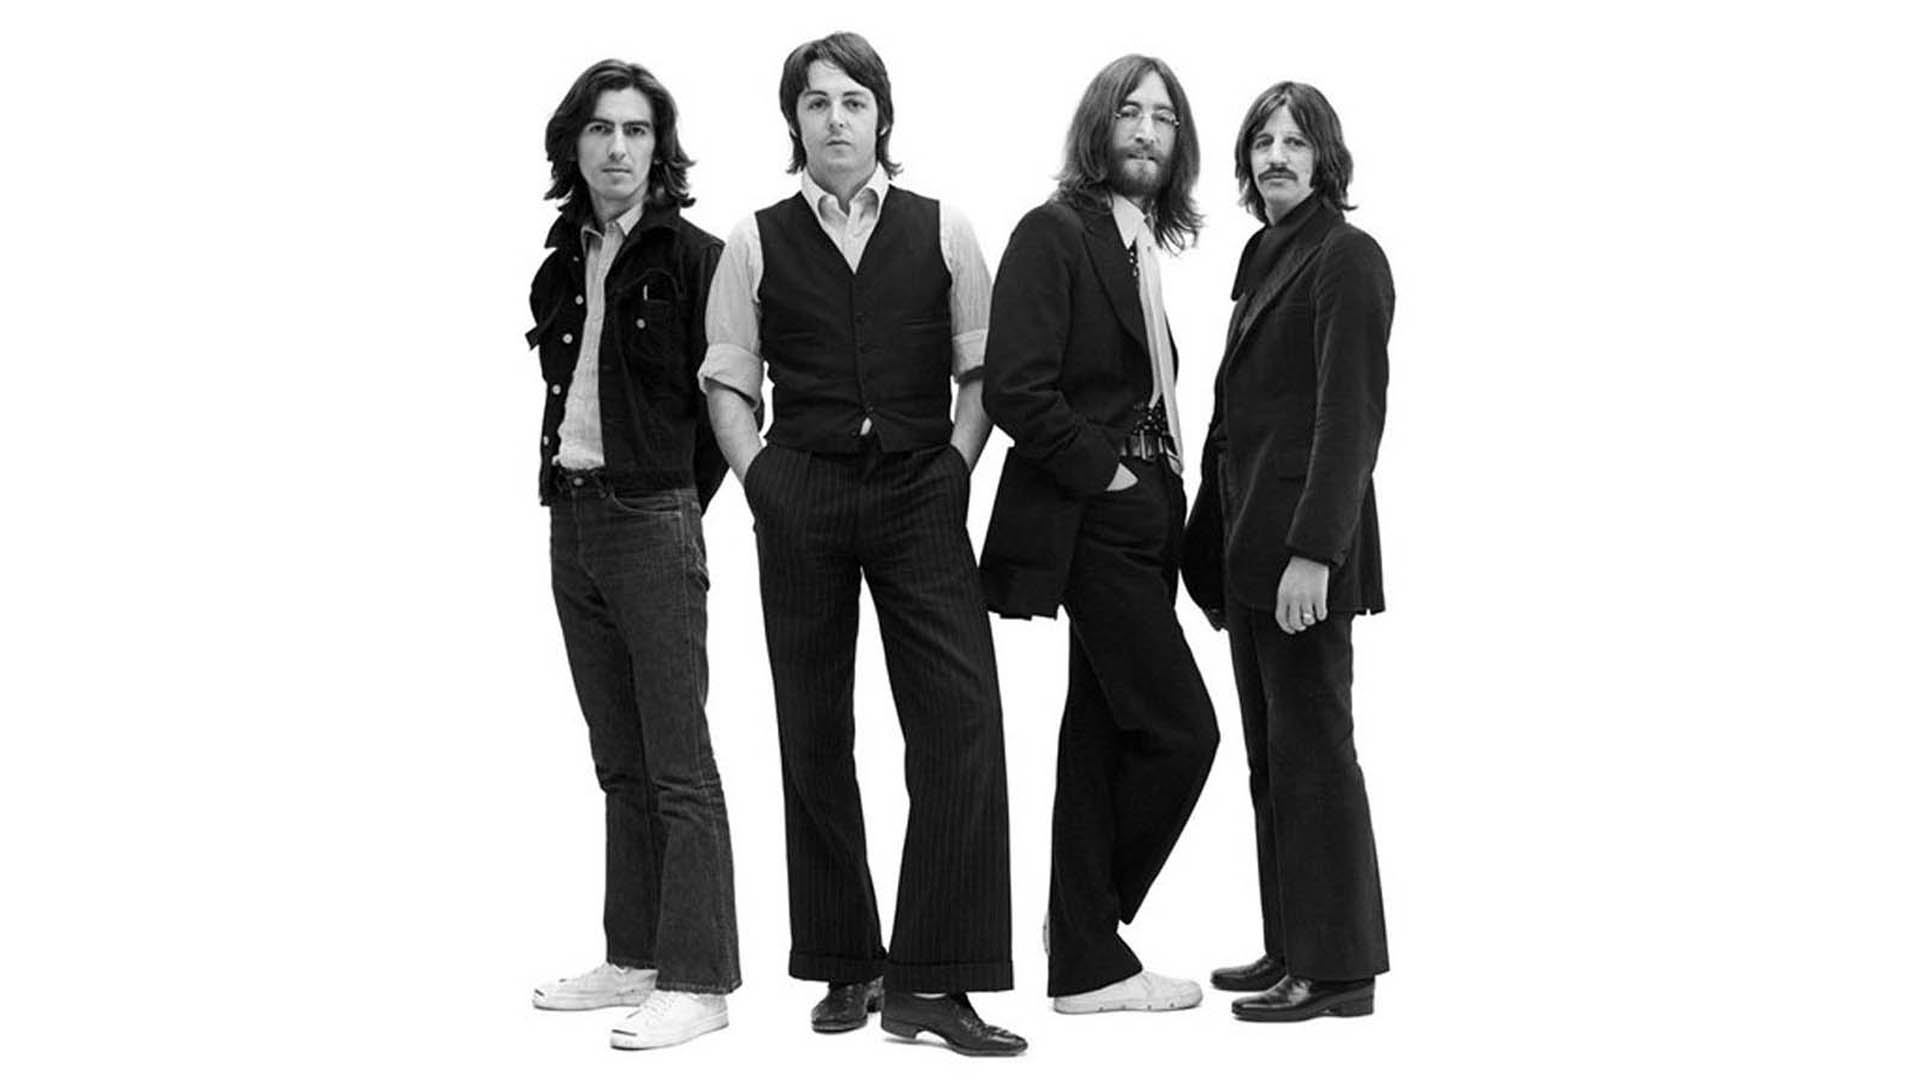 Nuevo documental de The Beatles dirigido por Ron Howard